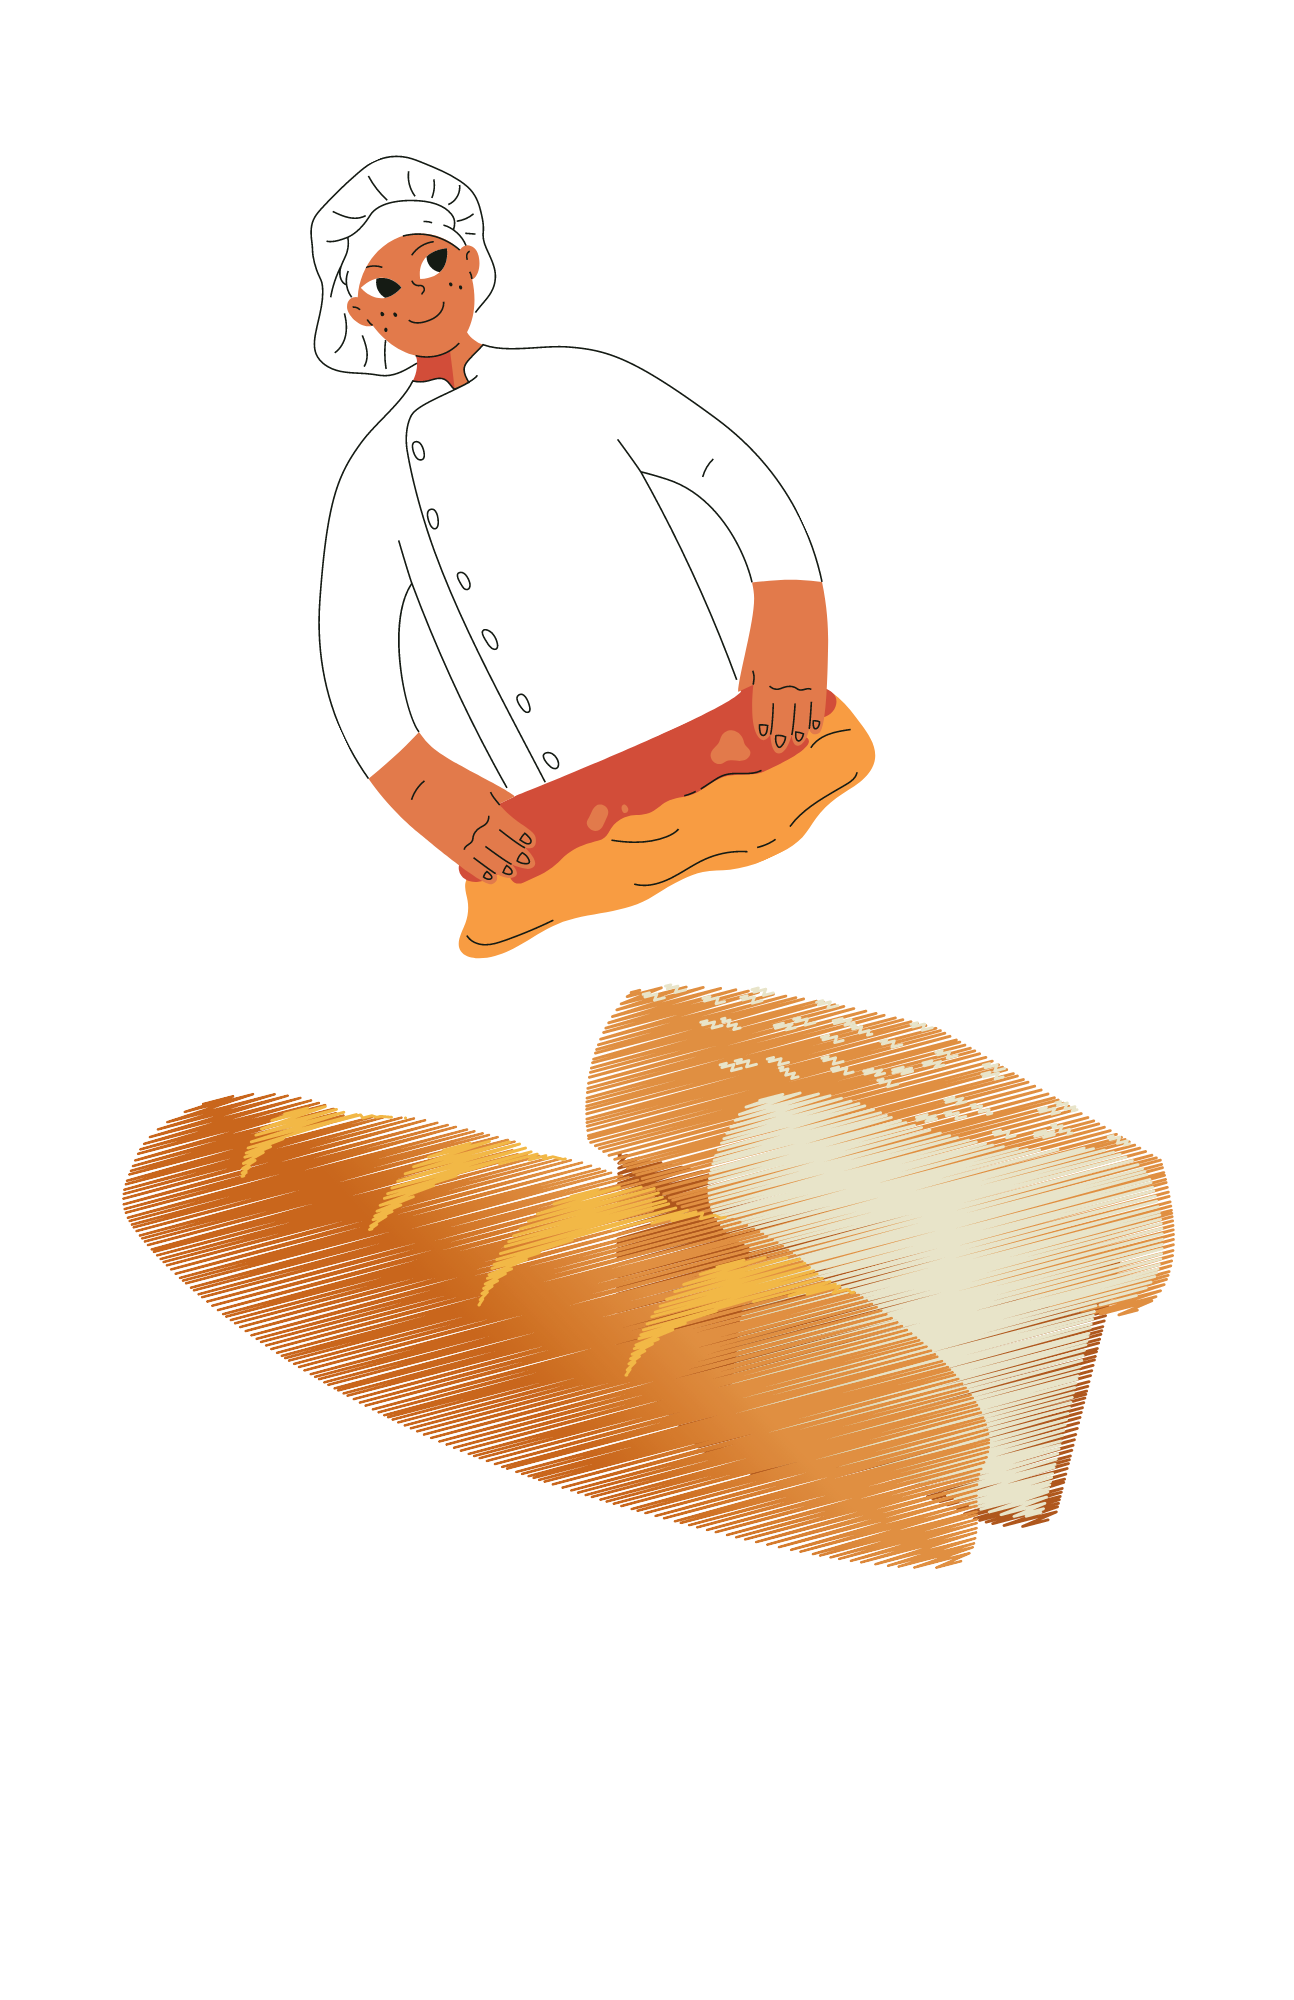 Bread and bread maker